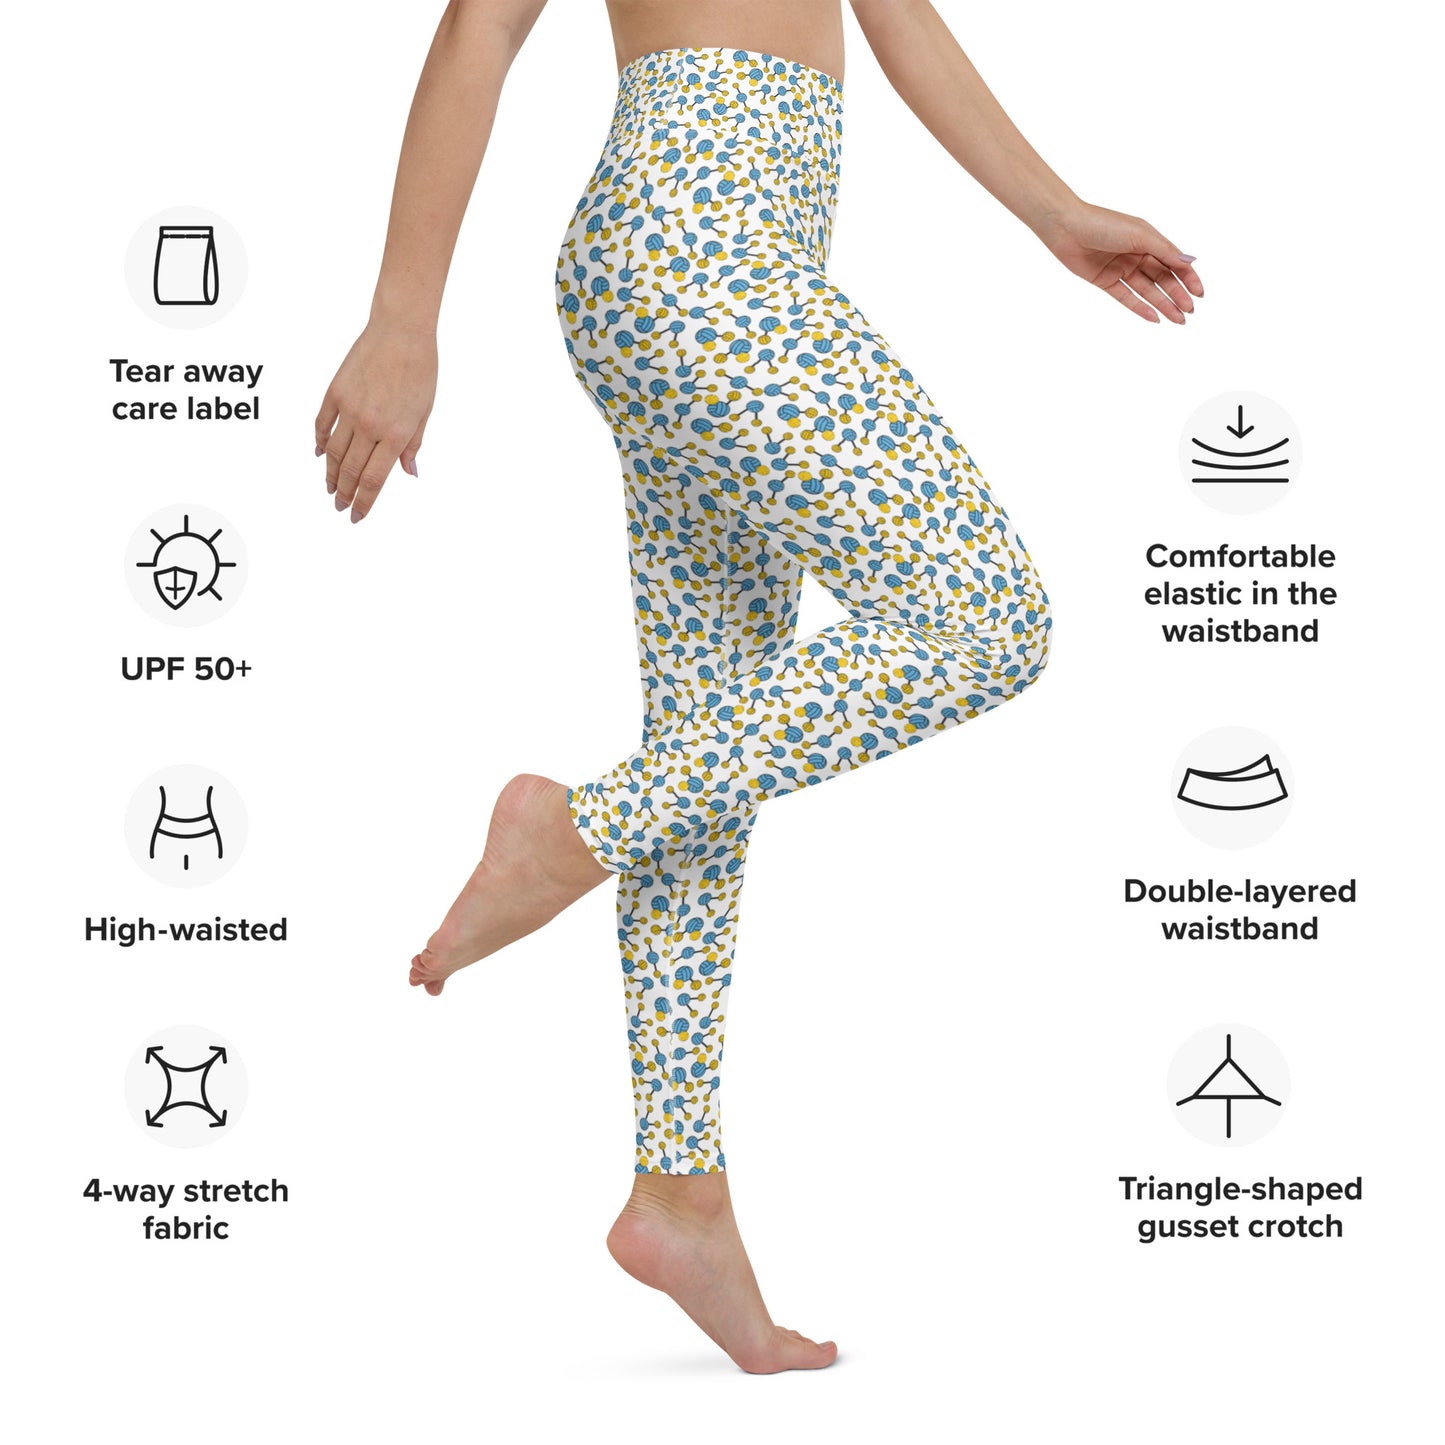 H20 Polo - Waterpolo Water Molecule Design - Yoga Leggings